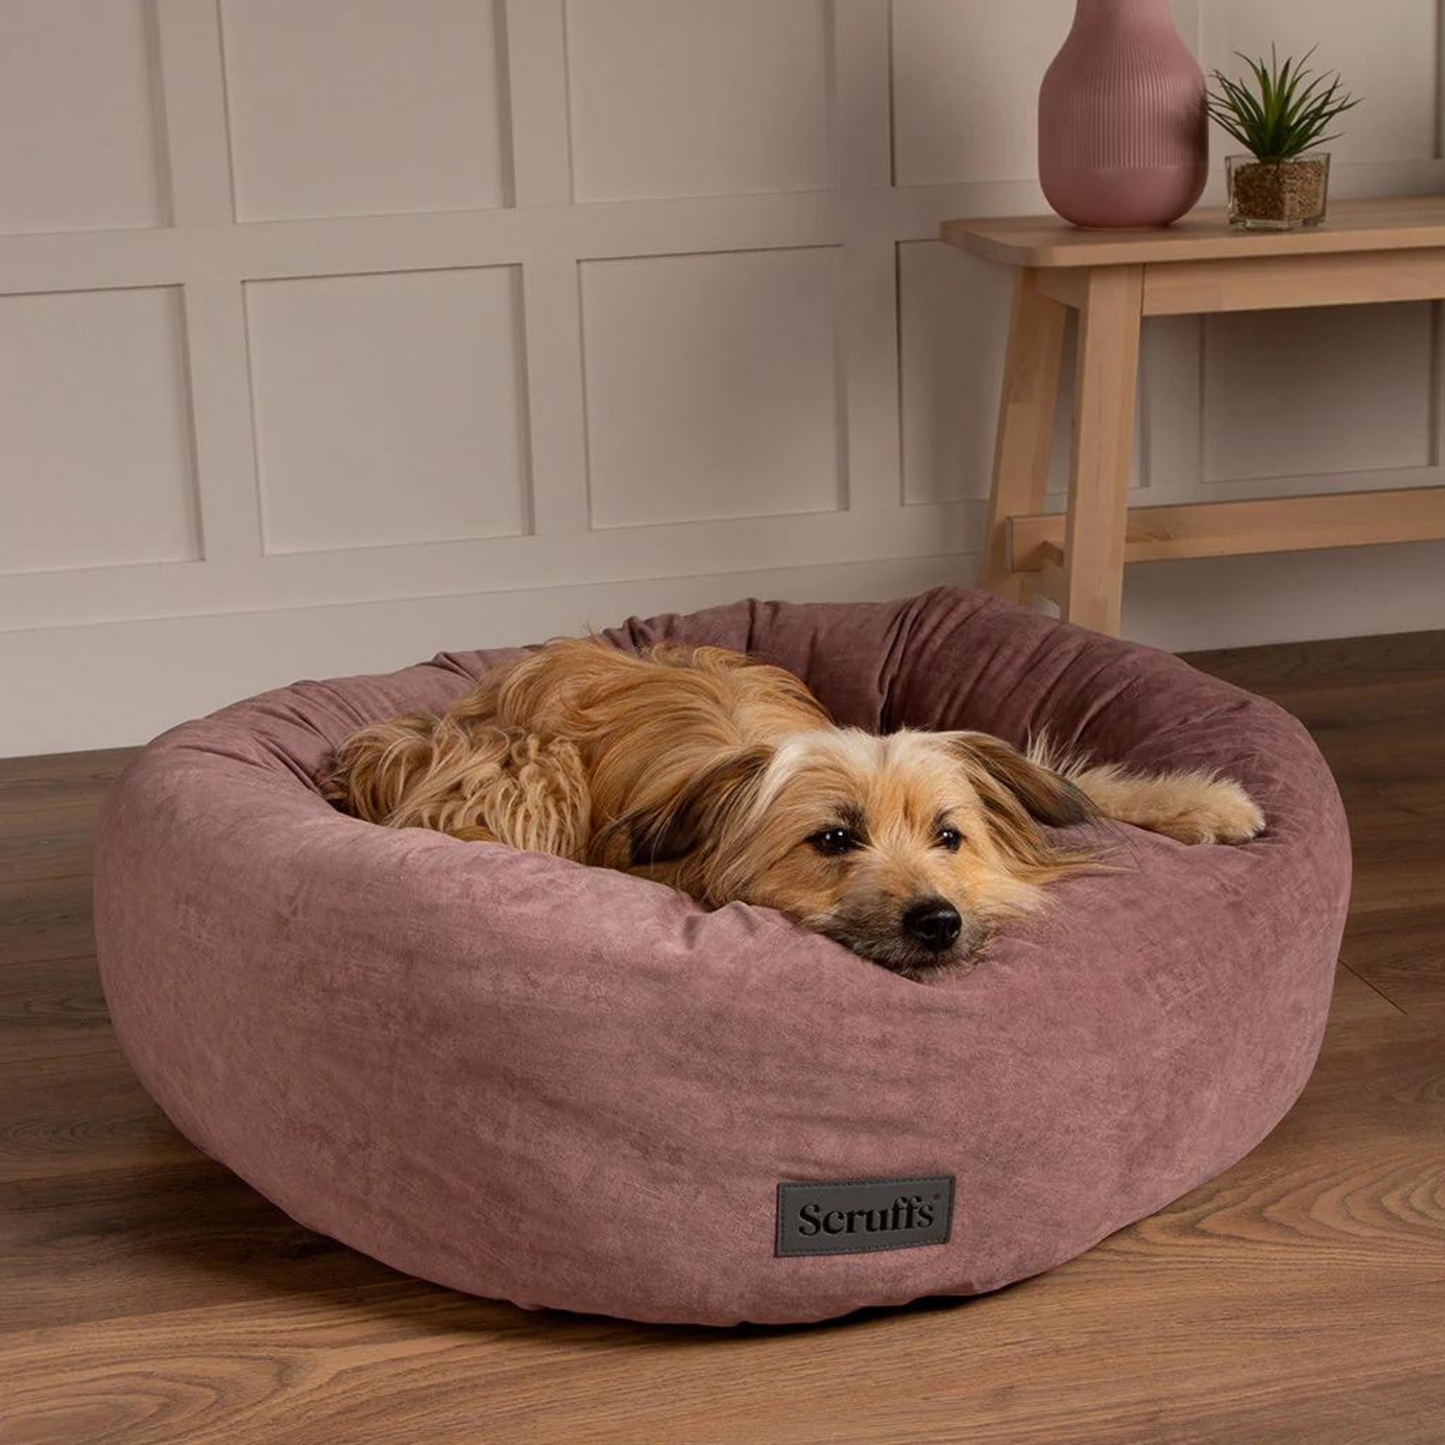 Scruffs Oslo Ring Donut Dog Bed Fully Machine Washable Blush Pink Medium, Large, X Large